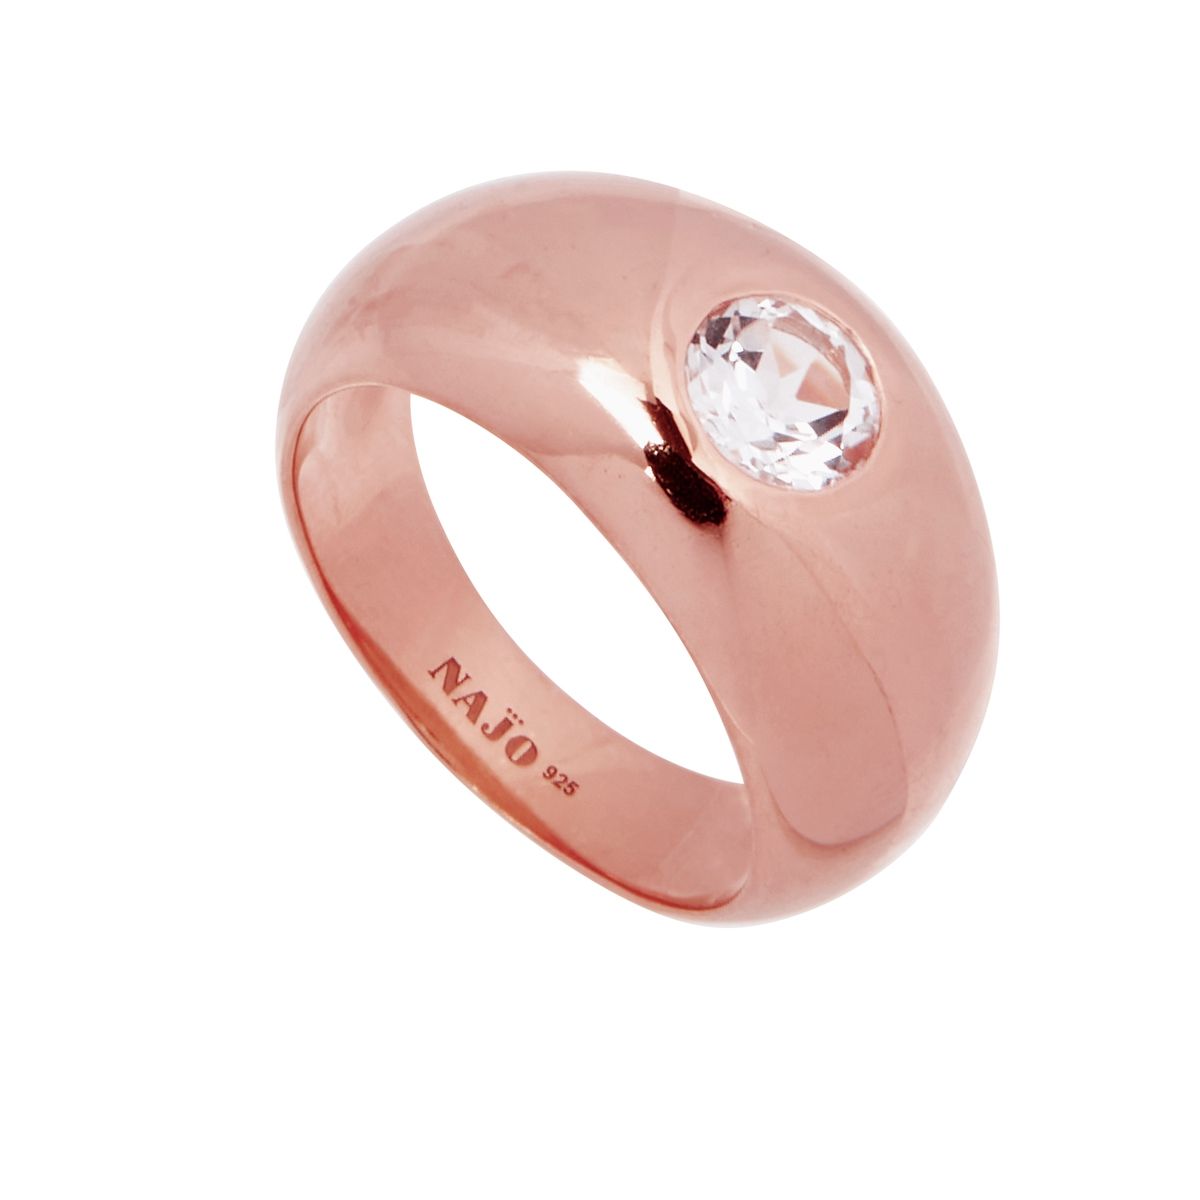 Najo R6640 Cosmic Rose Gold White Topaz Ring